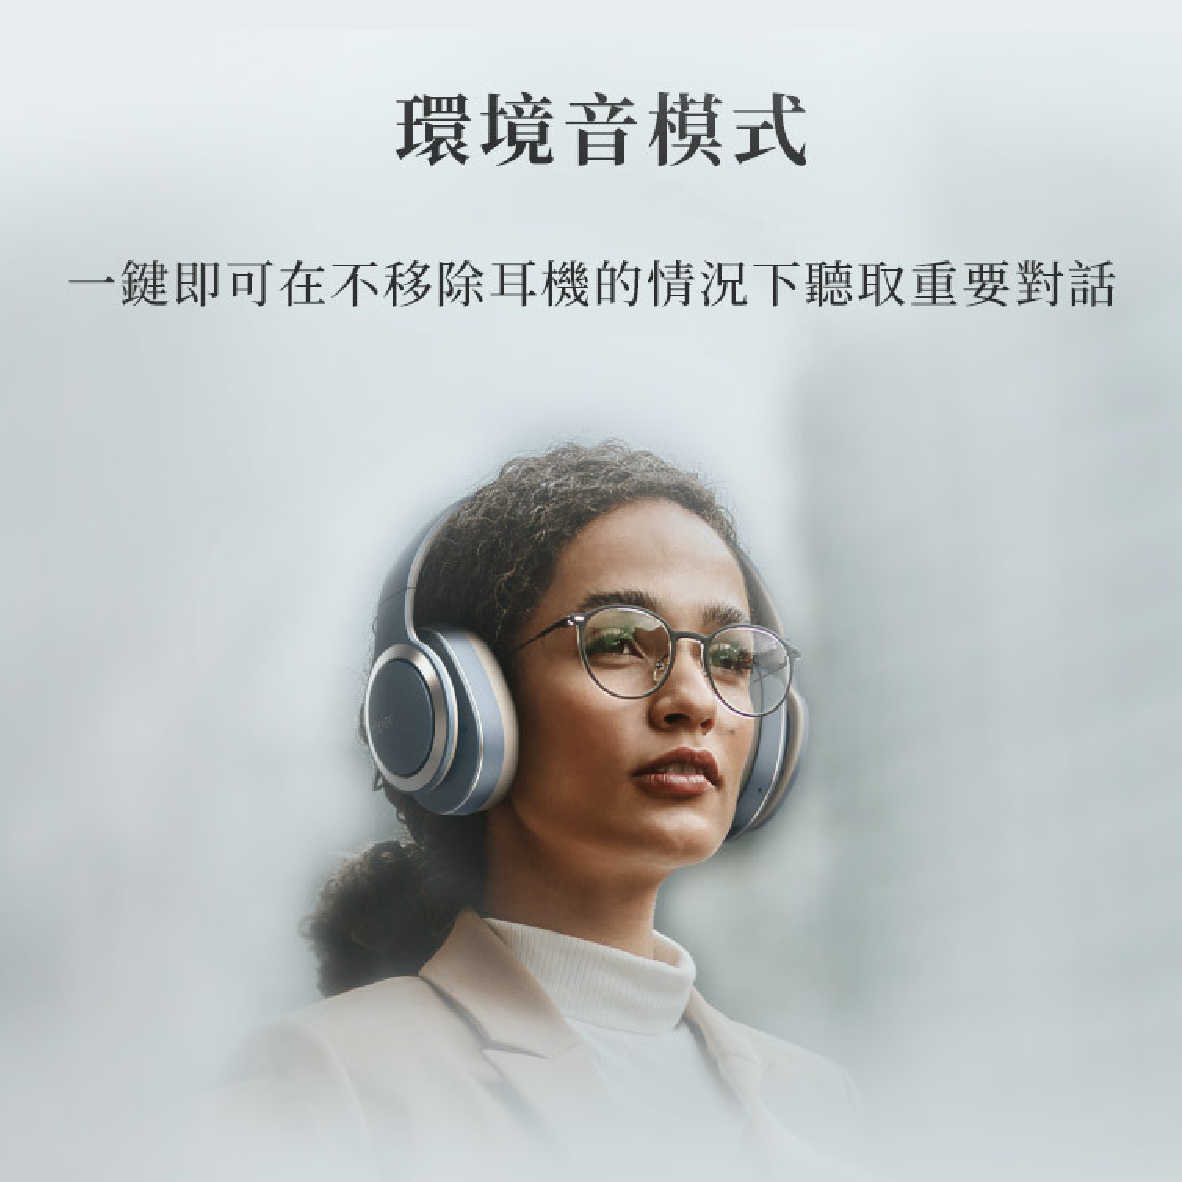 Cleer Enduro ANC 智能降噪 Hi-Res 雙麥通話 藍牙 耳罩式 耳機 | My Ear耳機專門店